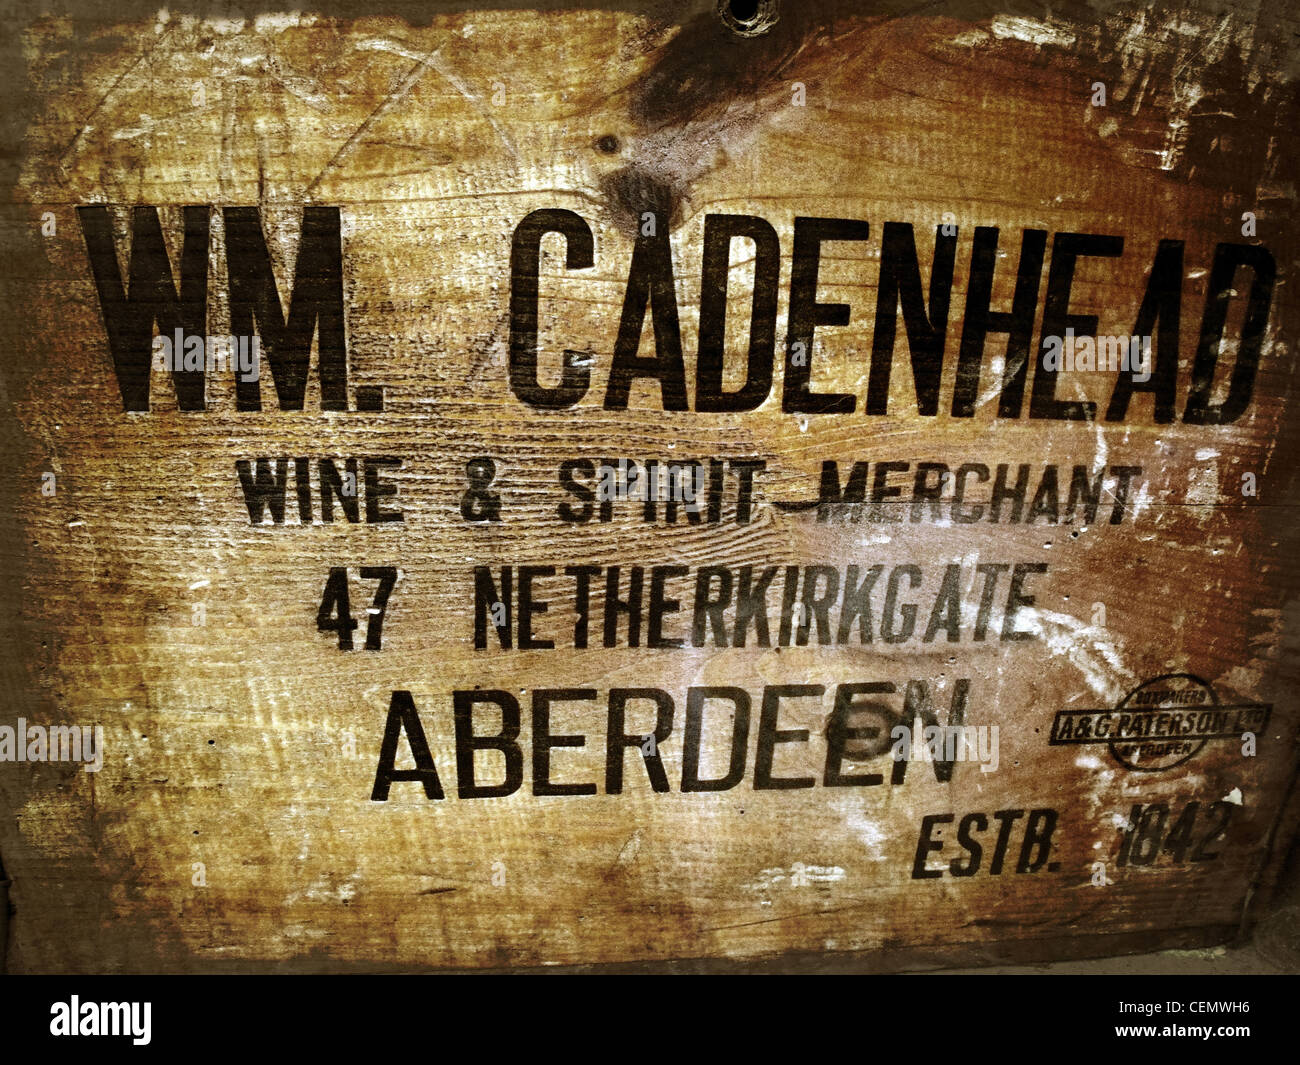 WM Cadenhead, Scots schottischen Whisky Spirit hölzerne Fall Aberdeen Wein & Geist Kaufmann 47 Netherkirkgate Aberdeen NE Schottland Stockfoto